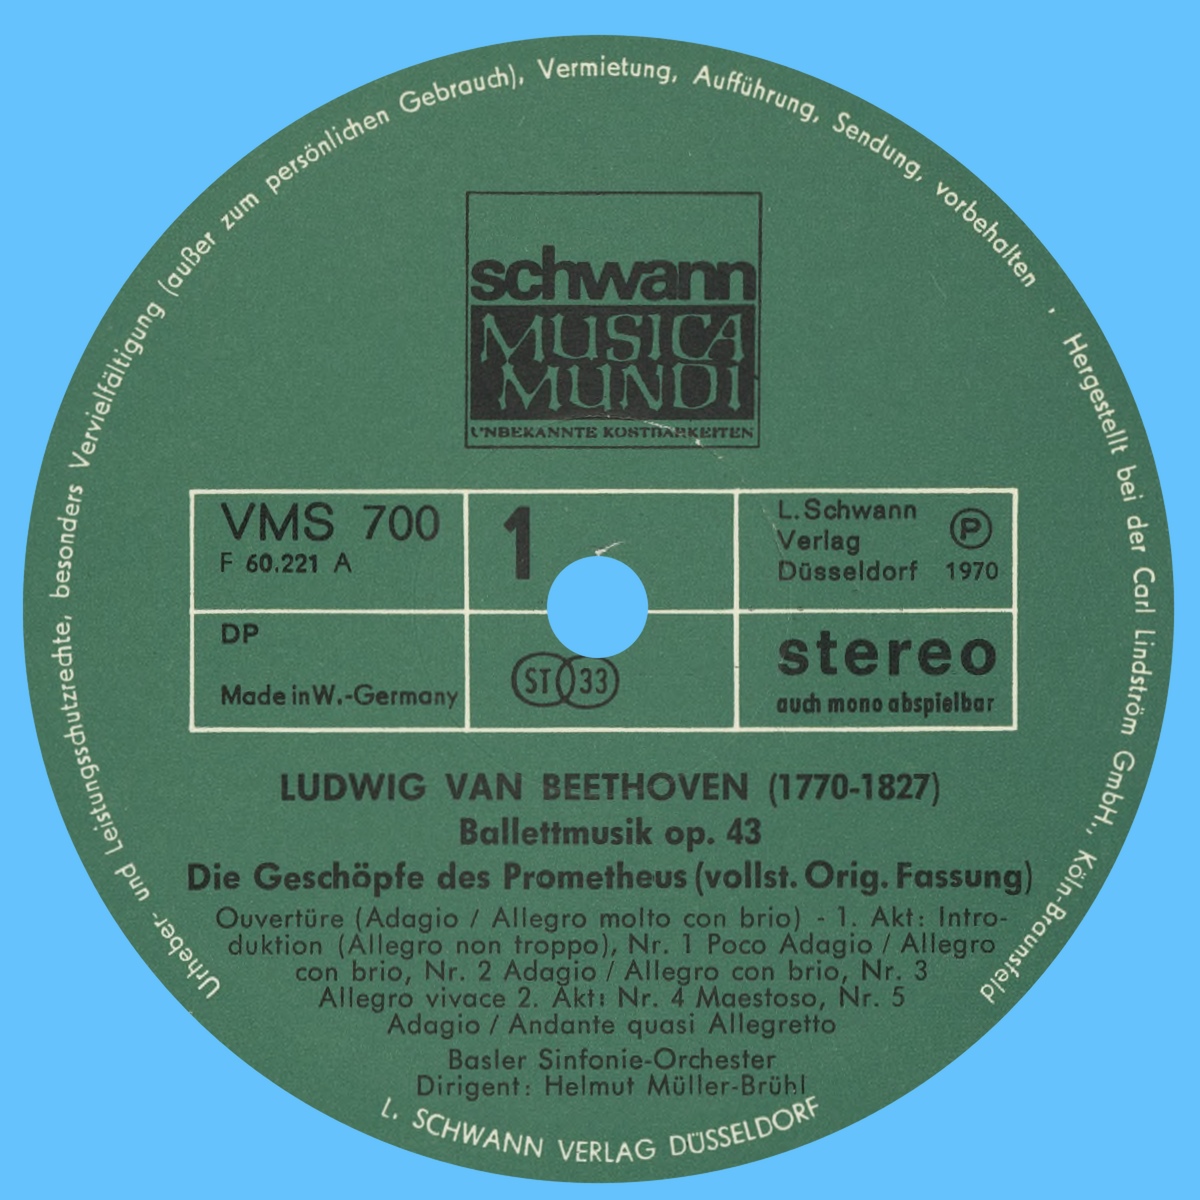 Étiquette rect du premier disque de l'album Schwann Musica Mundi VMS 700/701